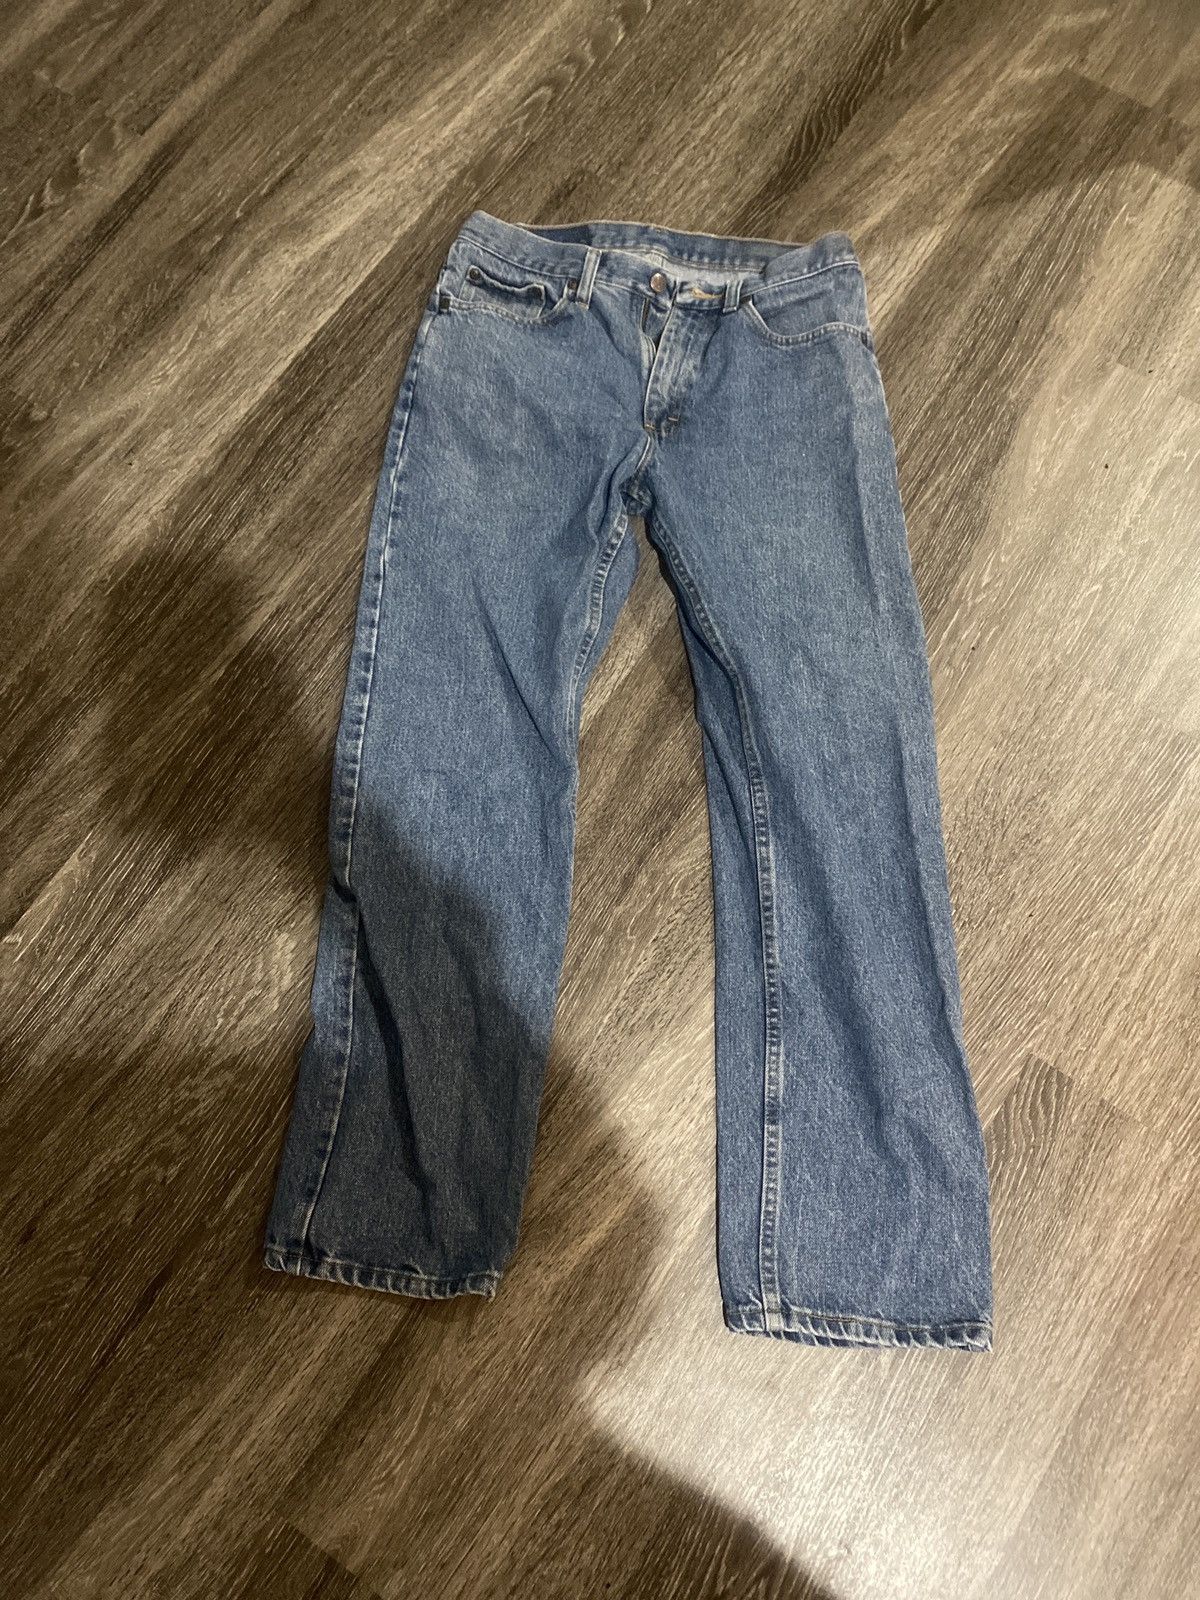 Wrangler Wrangler Vintage Jeans | Grailed